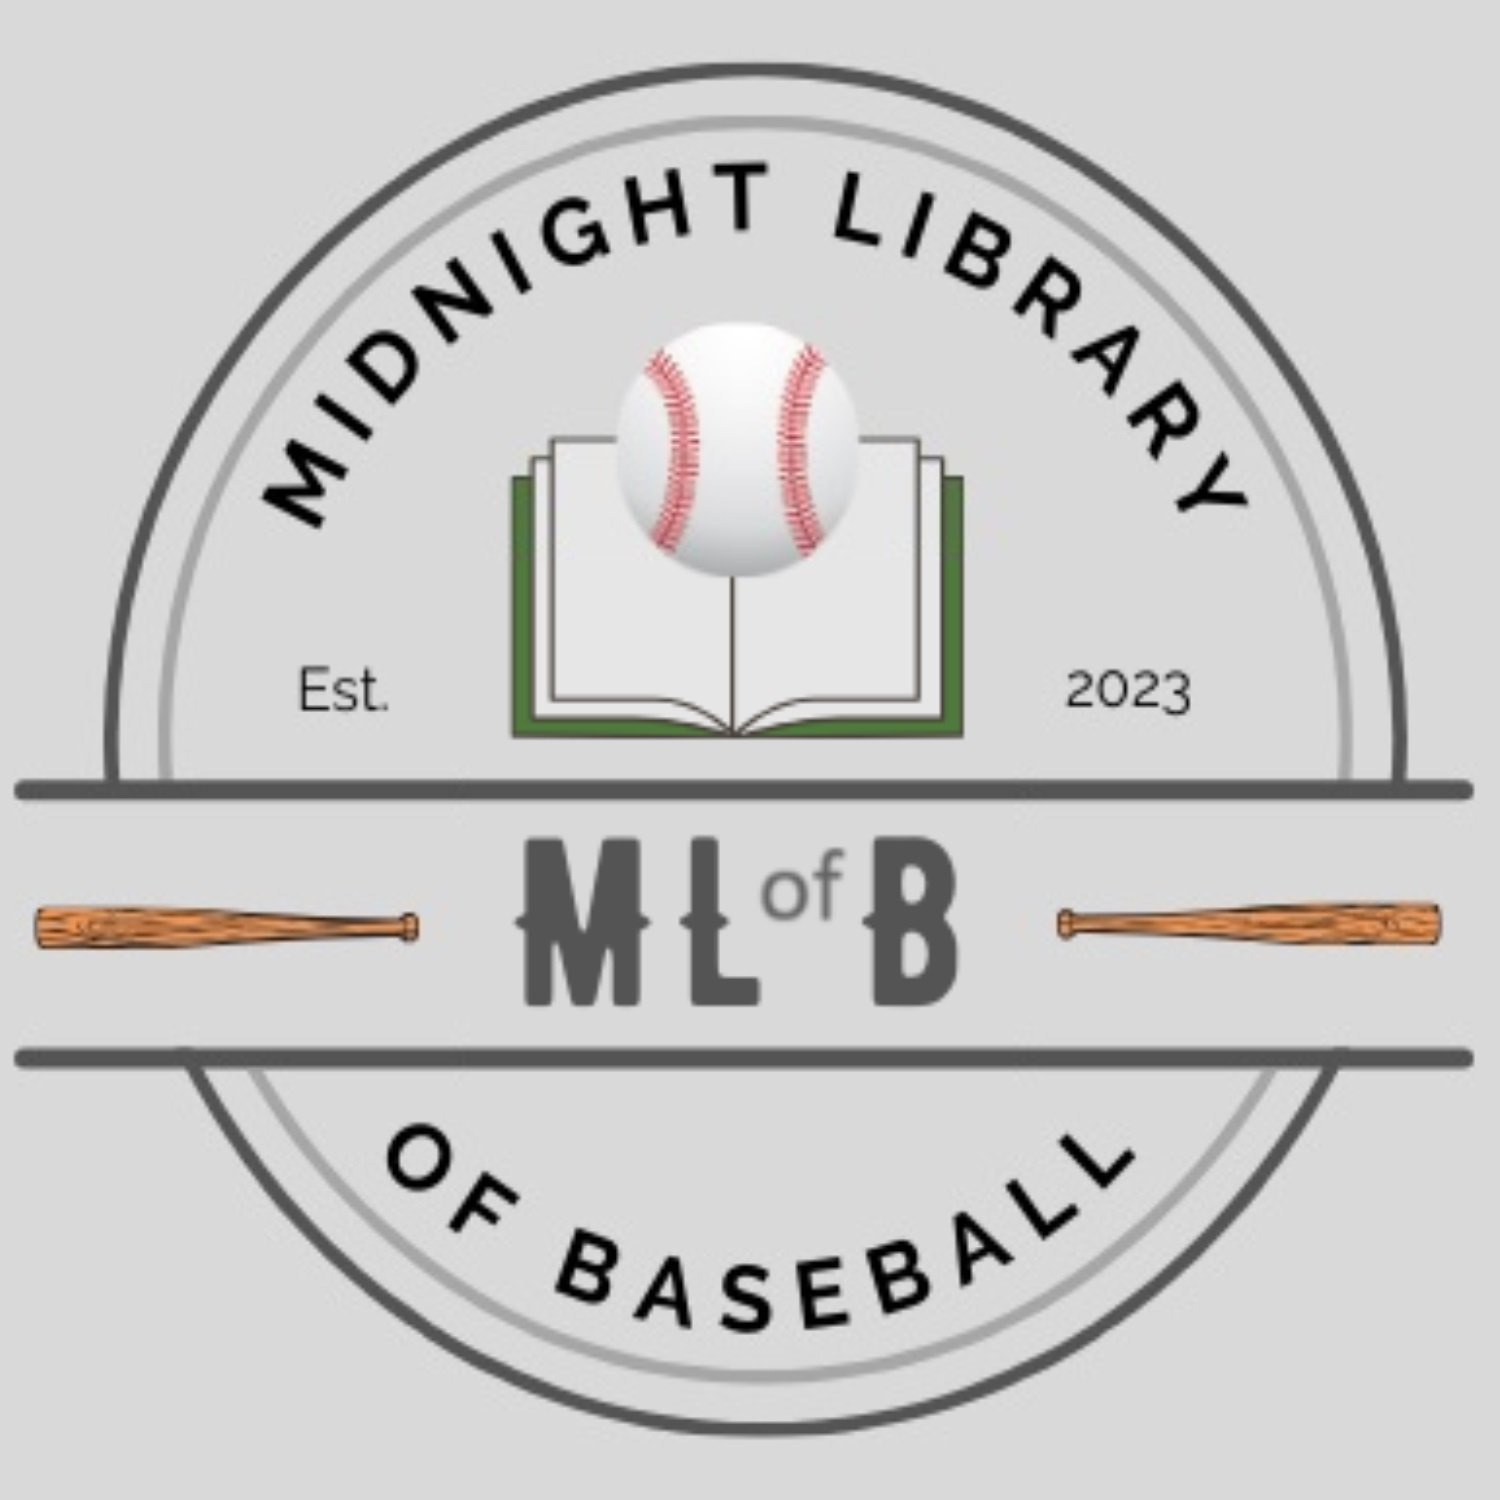 Midnight Library of Baseball